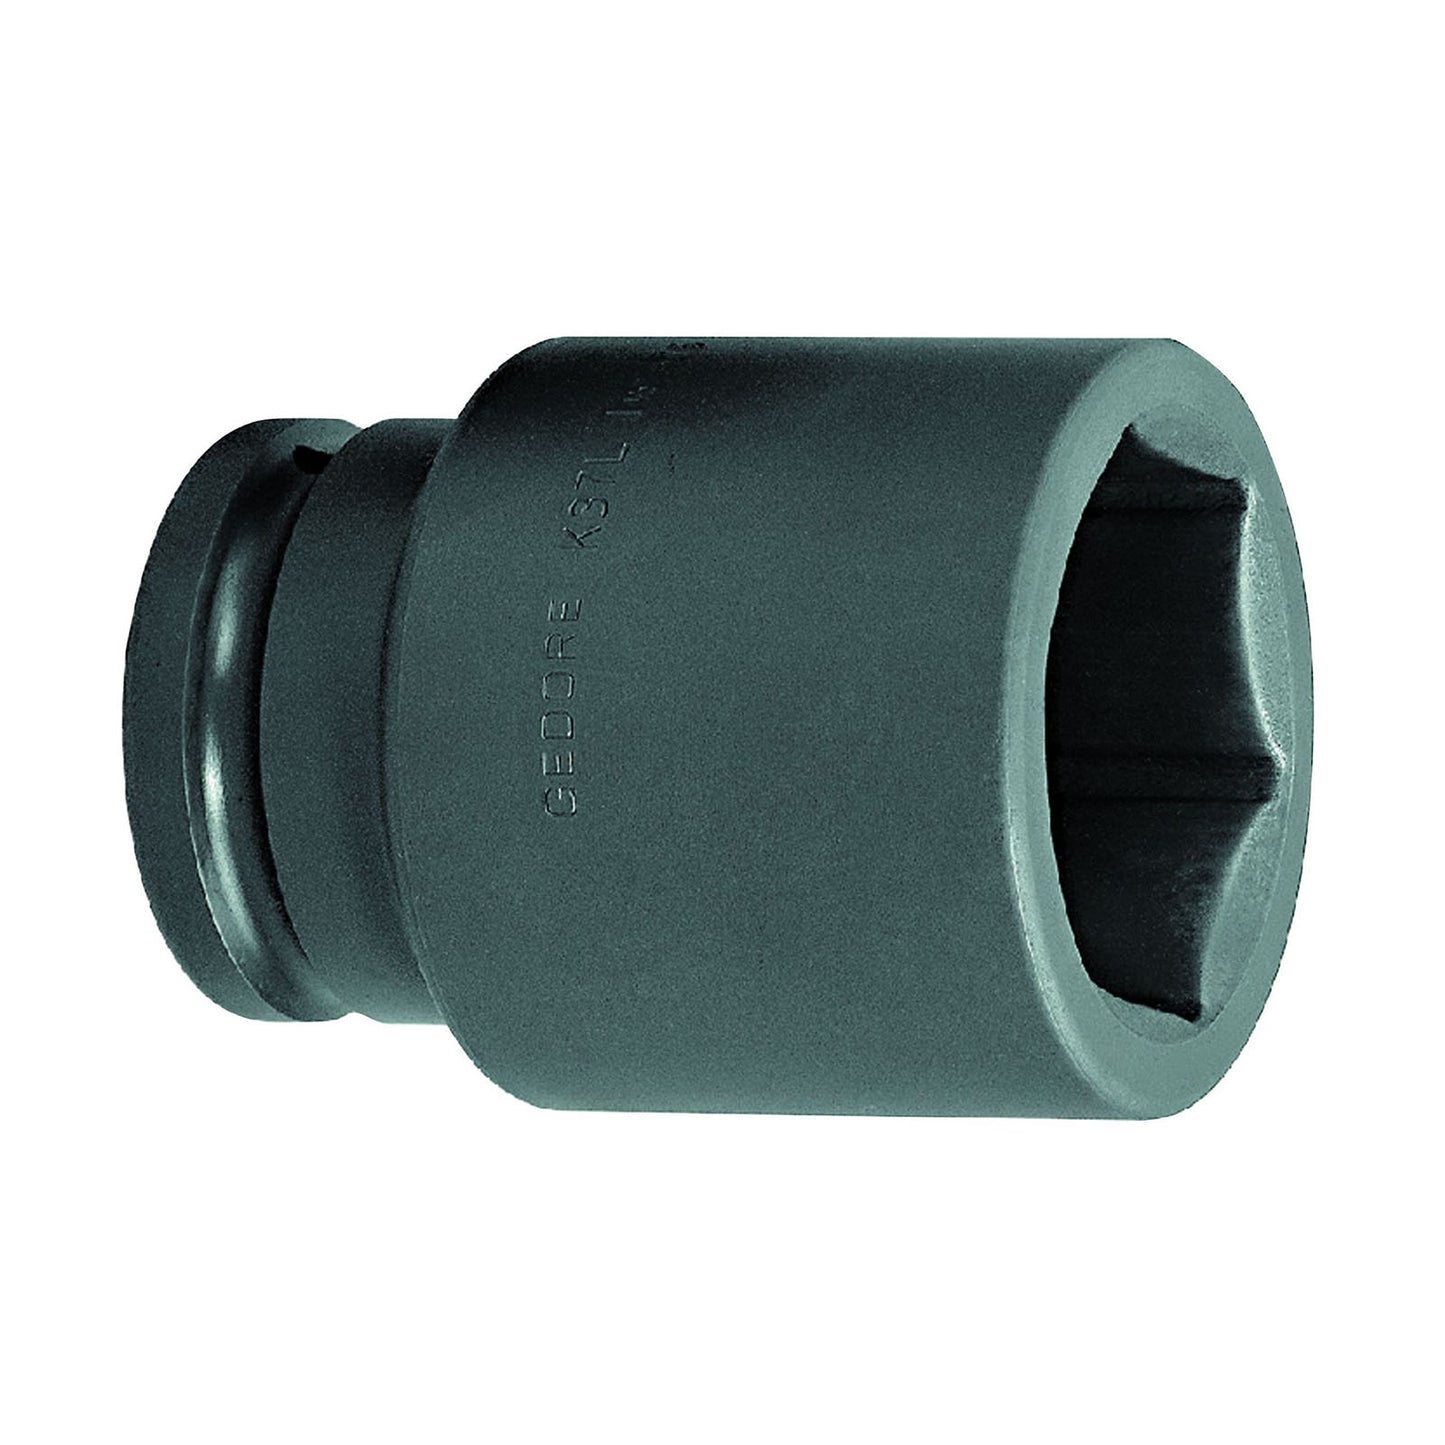 GEDORE K 37 L 46 - XL Impact Socket 1.1/2", 46 mm (6330380)